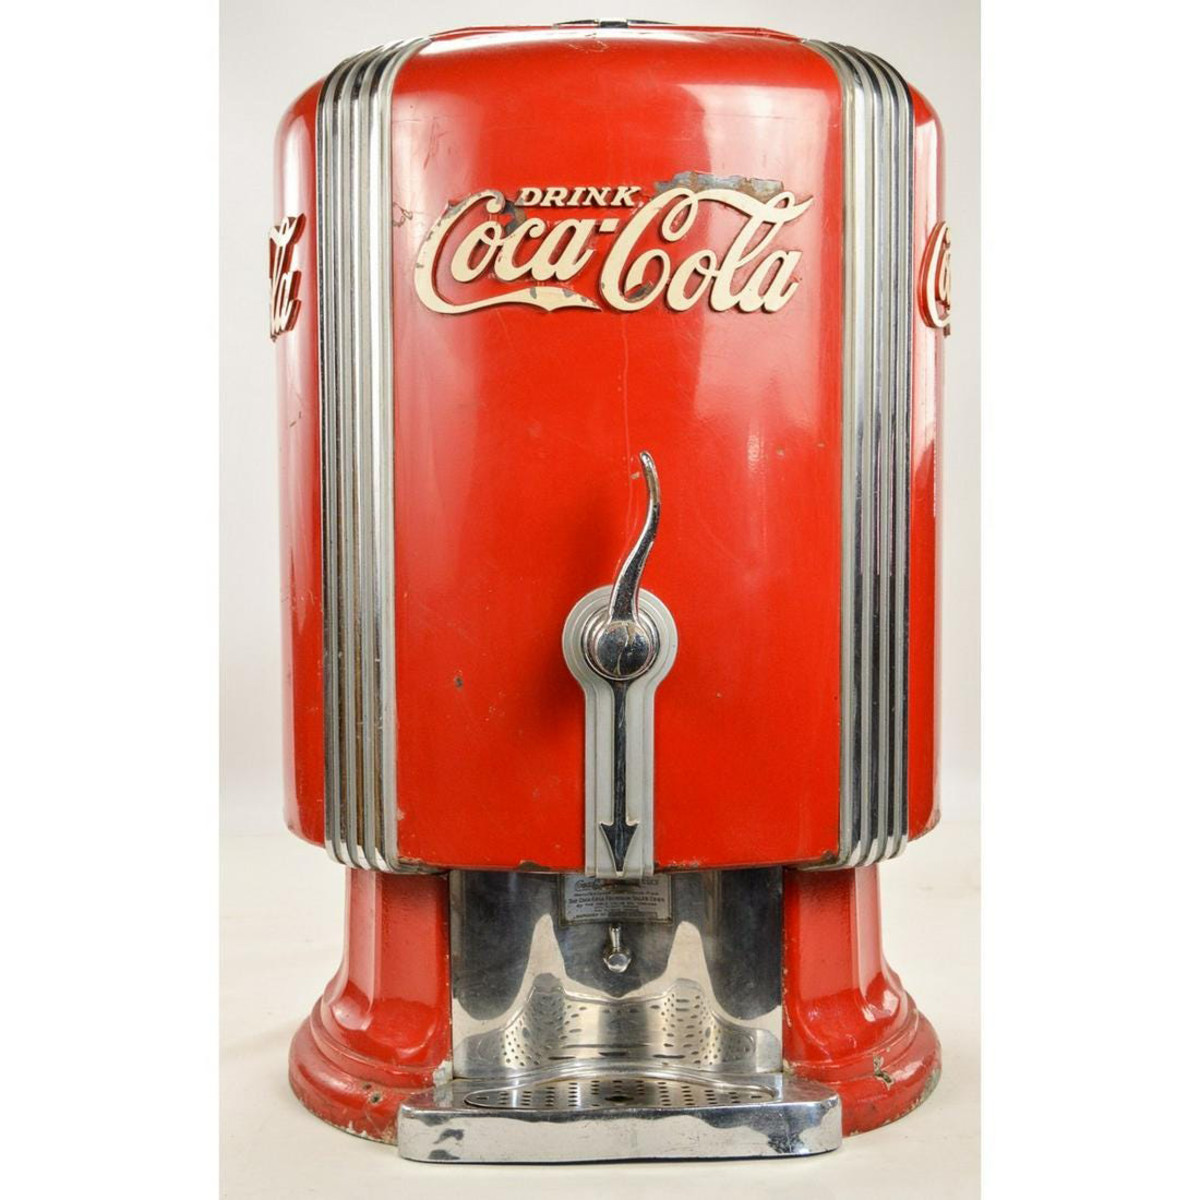 1933 Coca-Cola dispenser